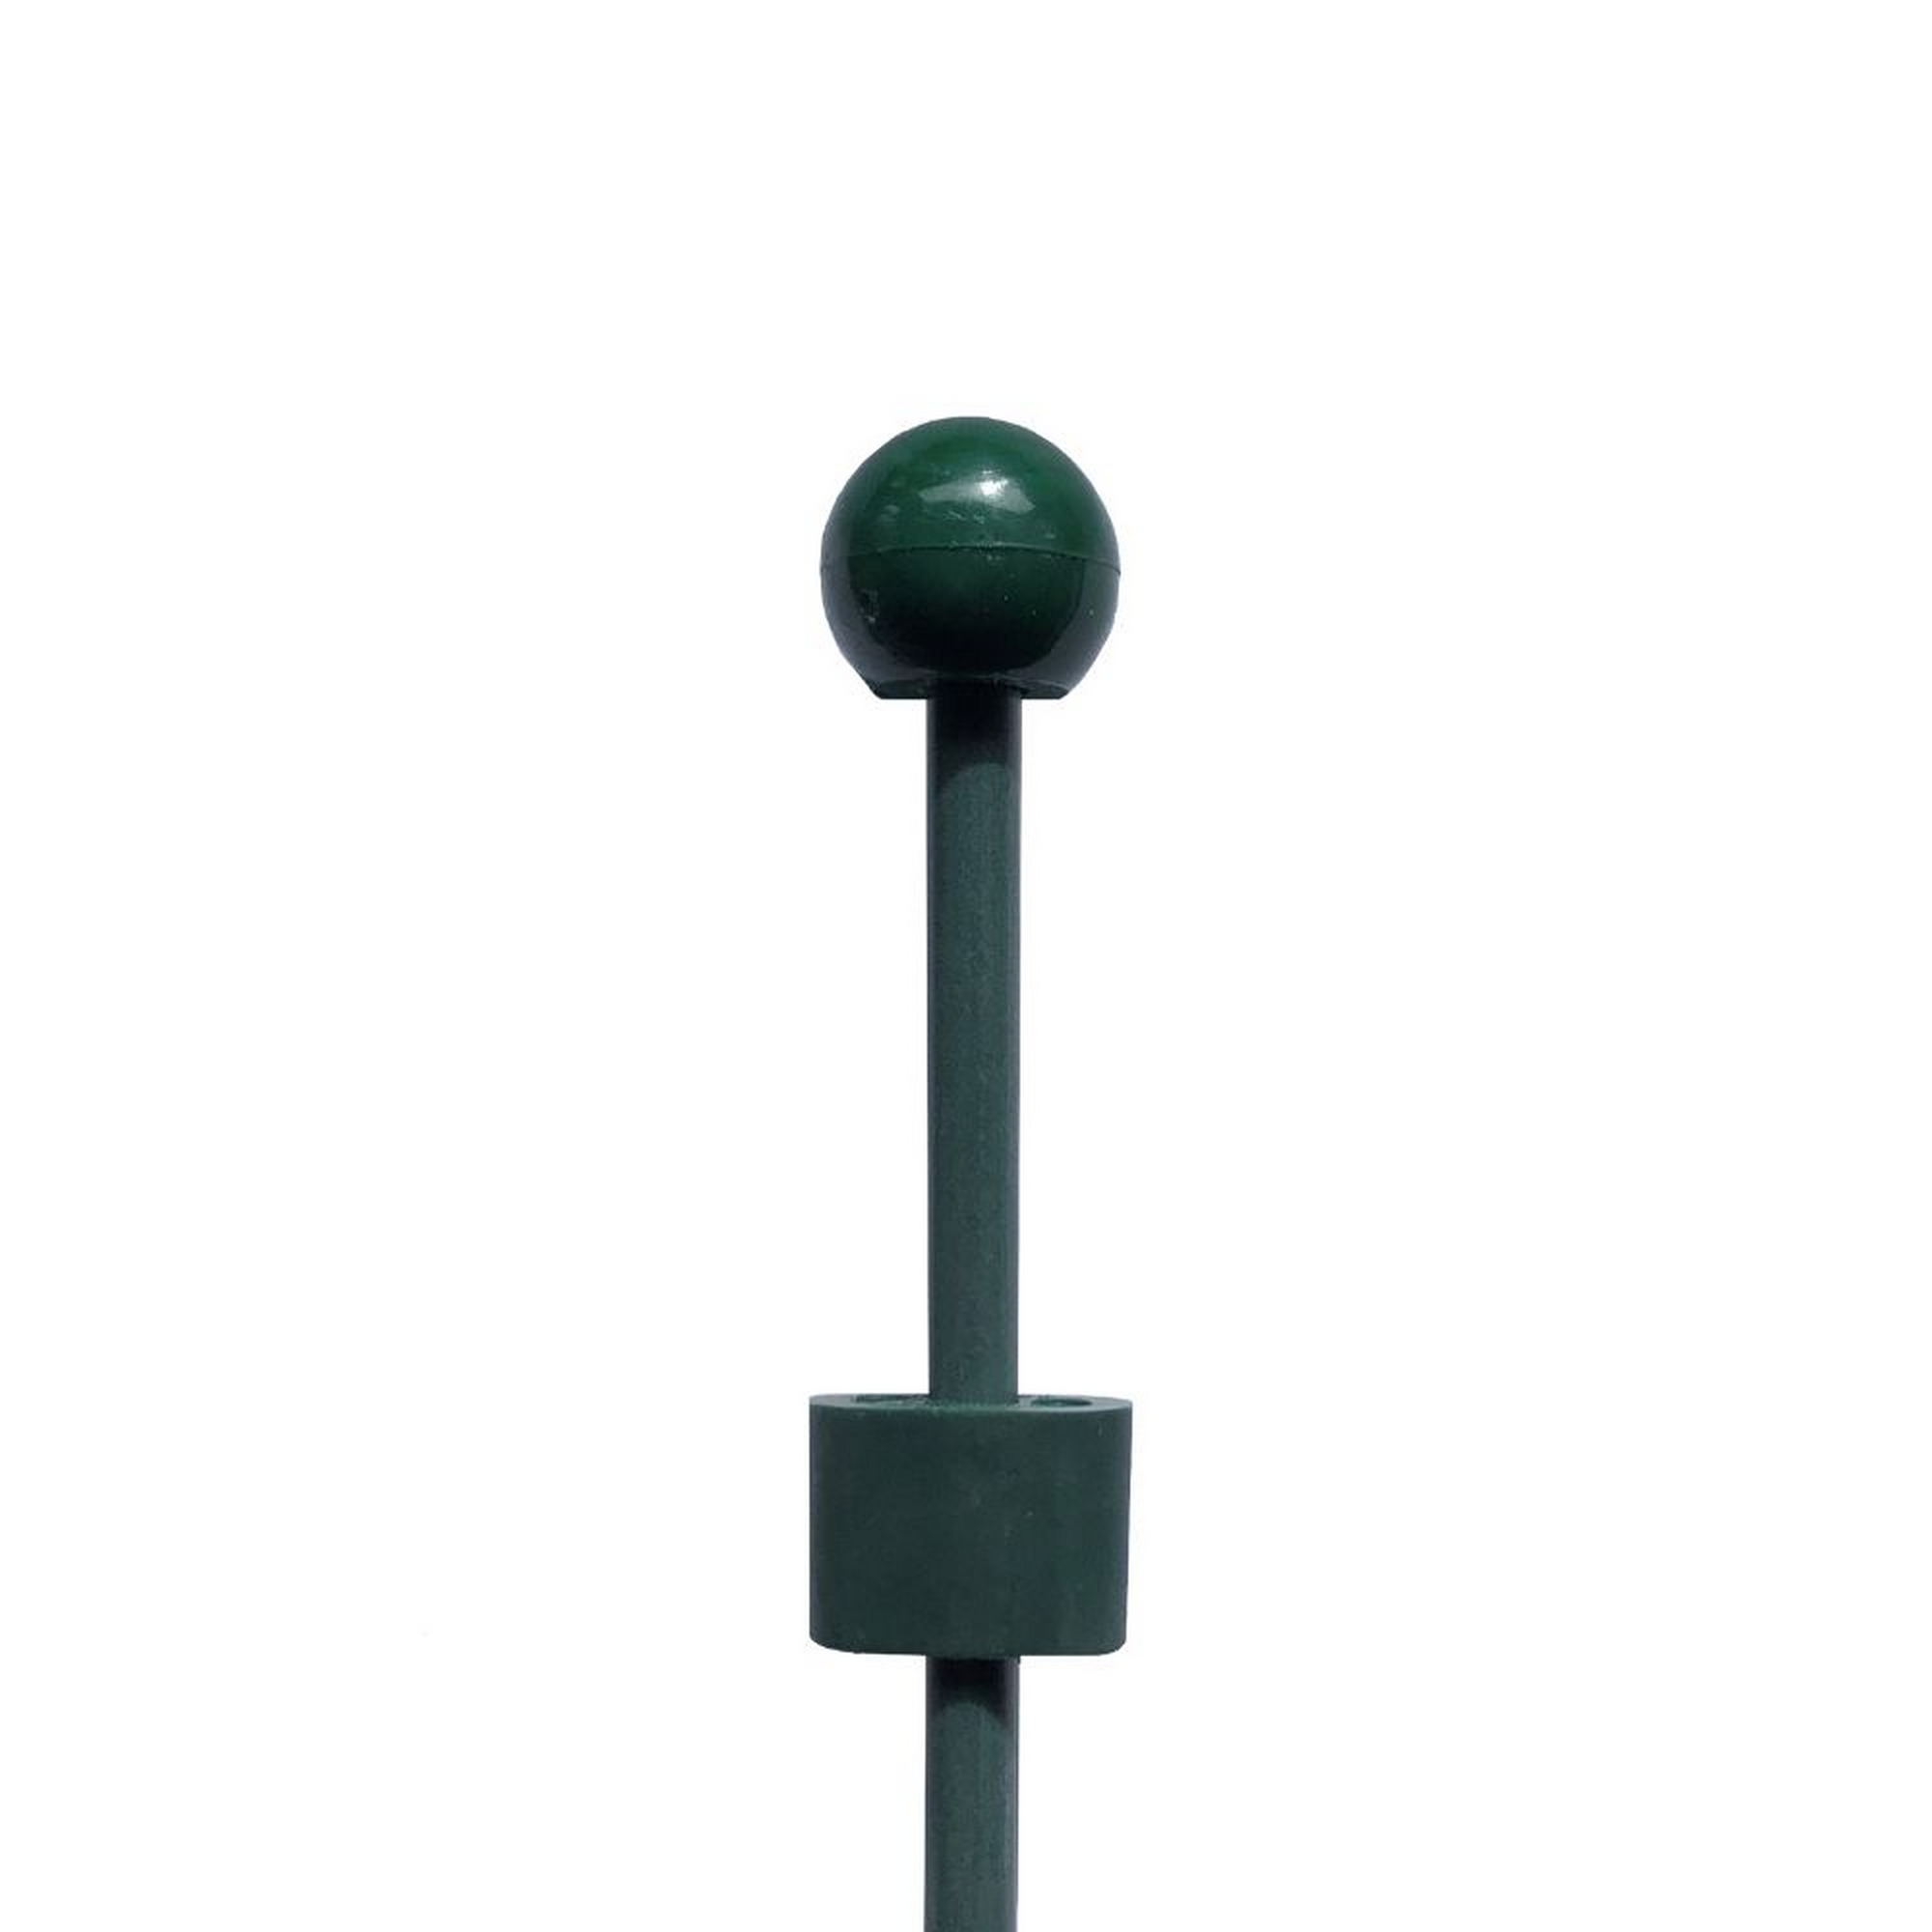 Pinnup-Bodenstab mit Kupplung Glasfiber grün Ø 0,8 x 75 cm + product picture